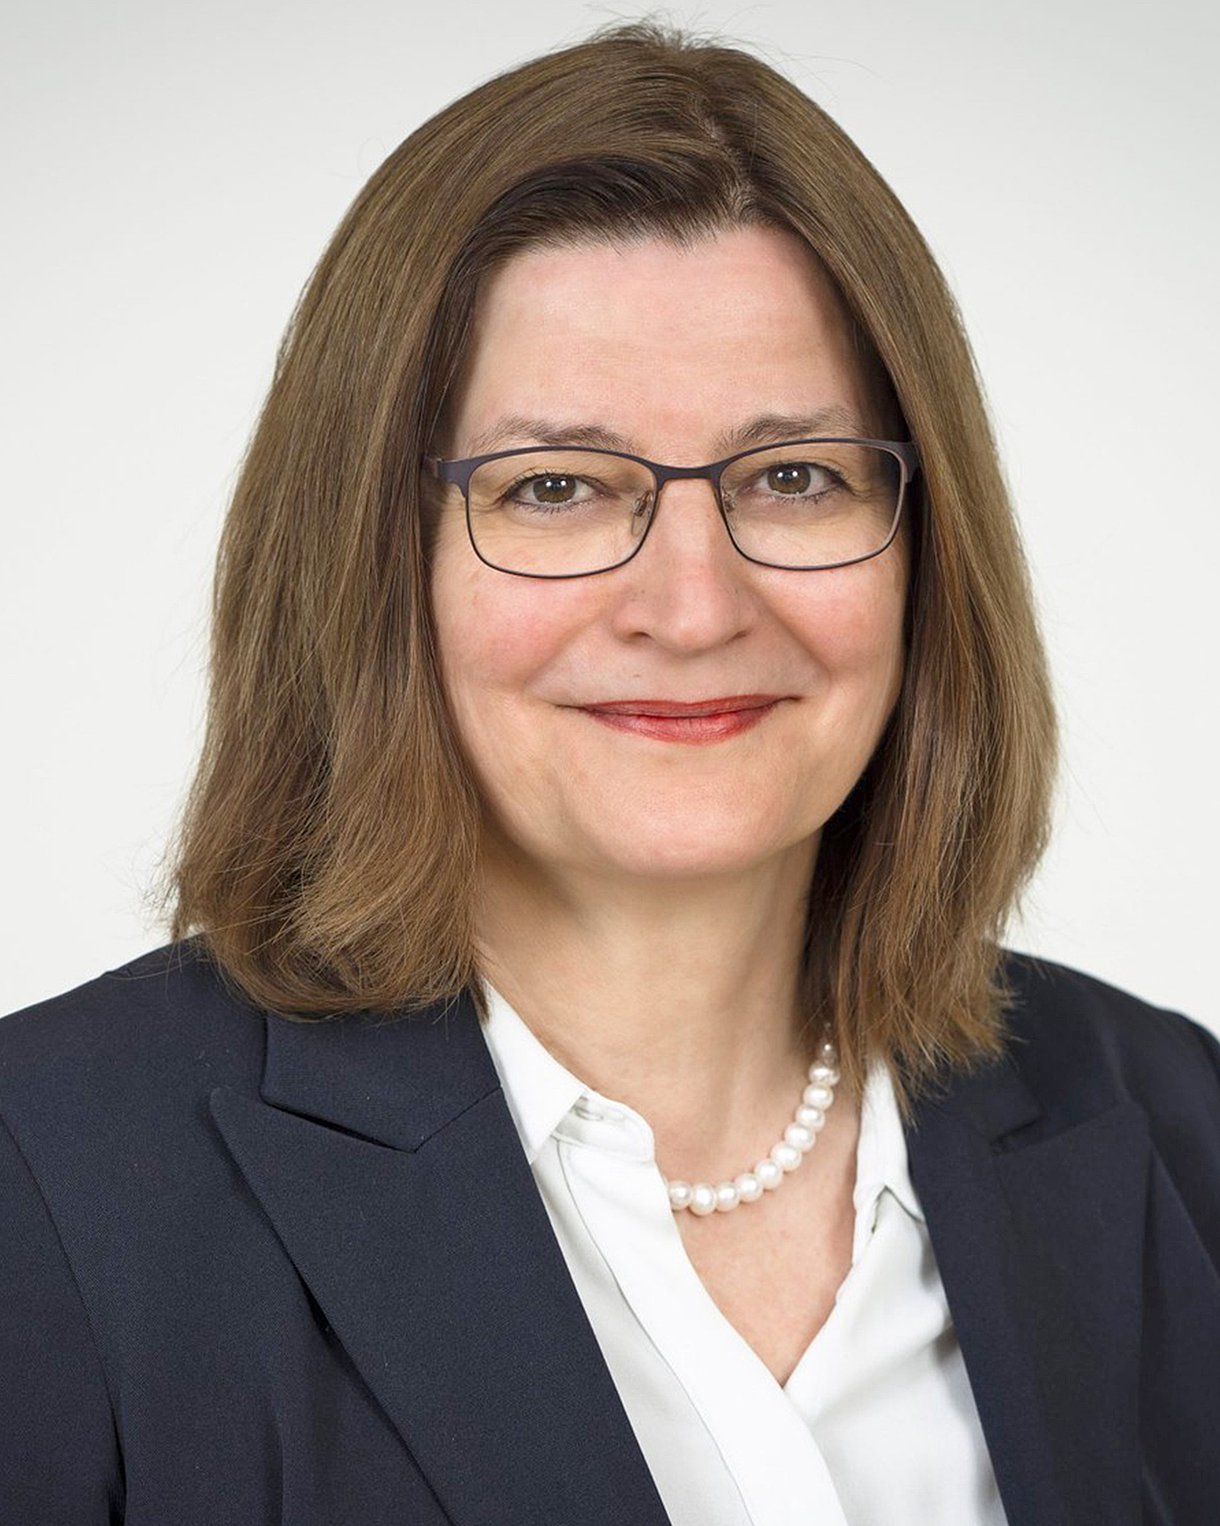 Foto: Porträtbild von Ulrike Geppert-Orthofer, Präsidentin des Deutschen Hebammenverbandes e.V.